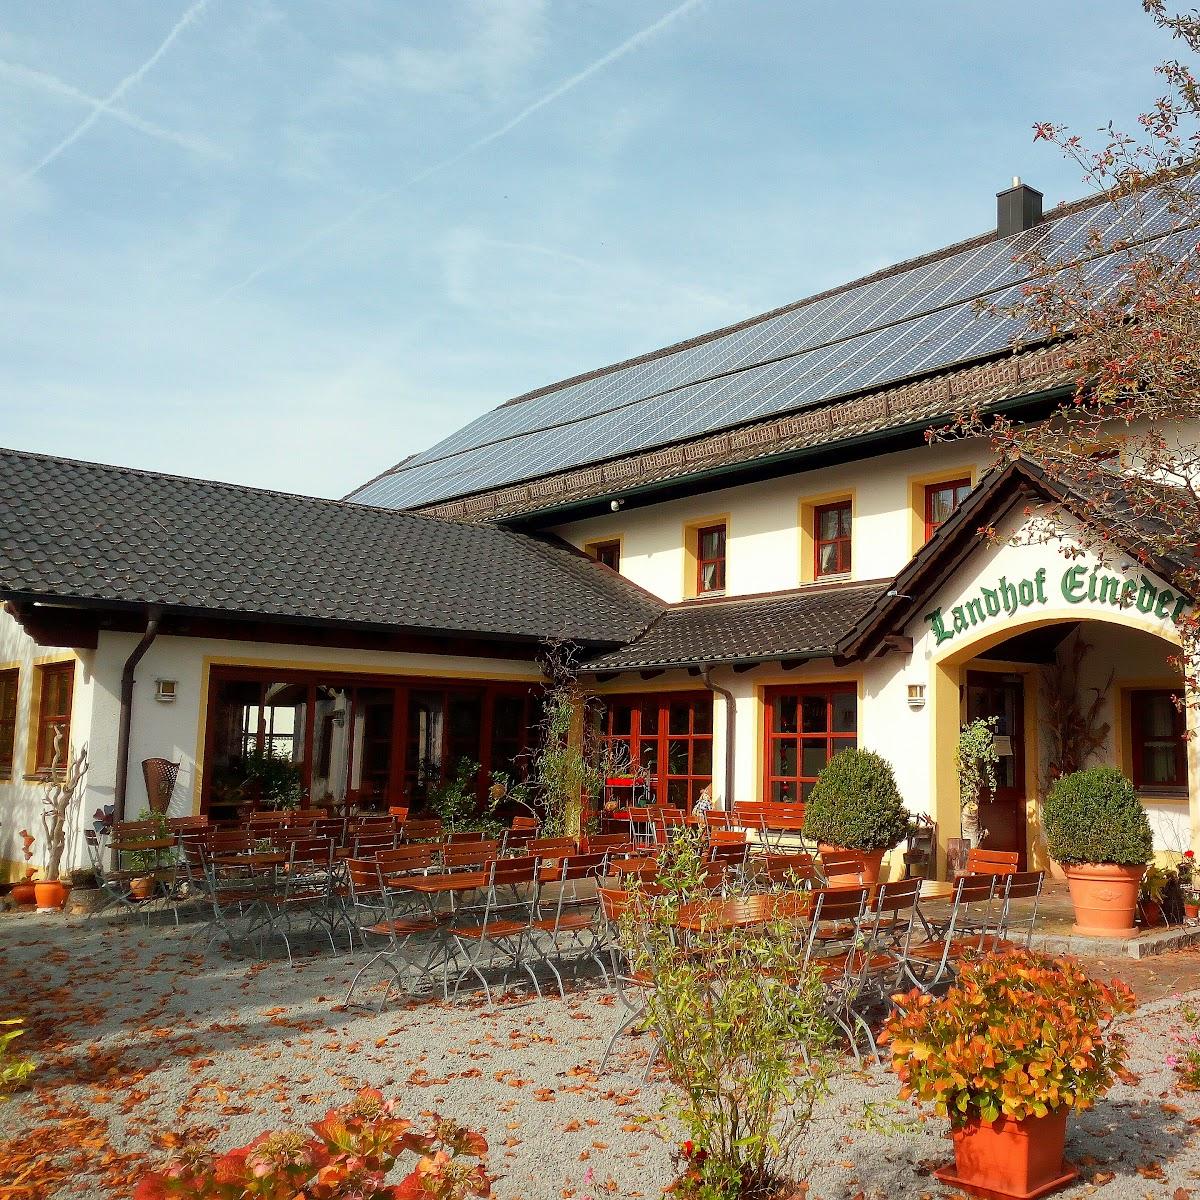 Restaurant "Landhof Eineder" in Vilshofen an der Donau